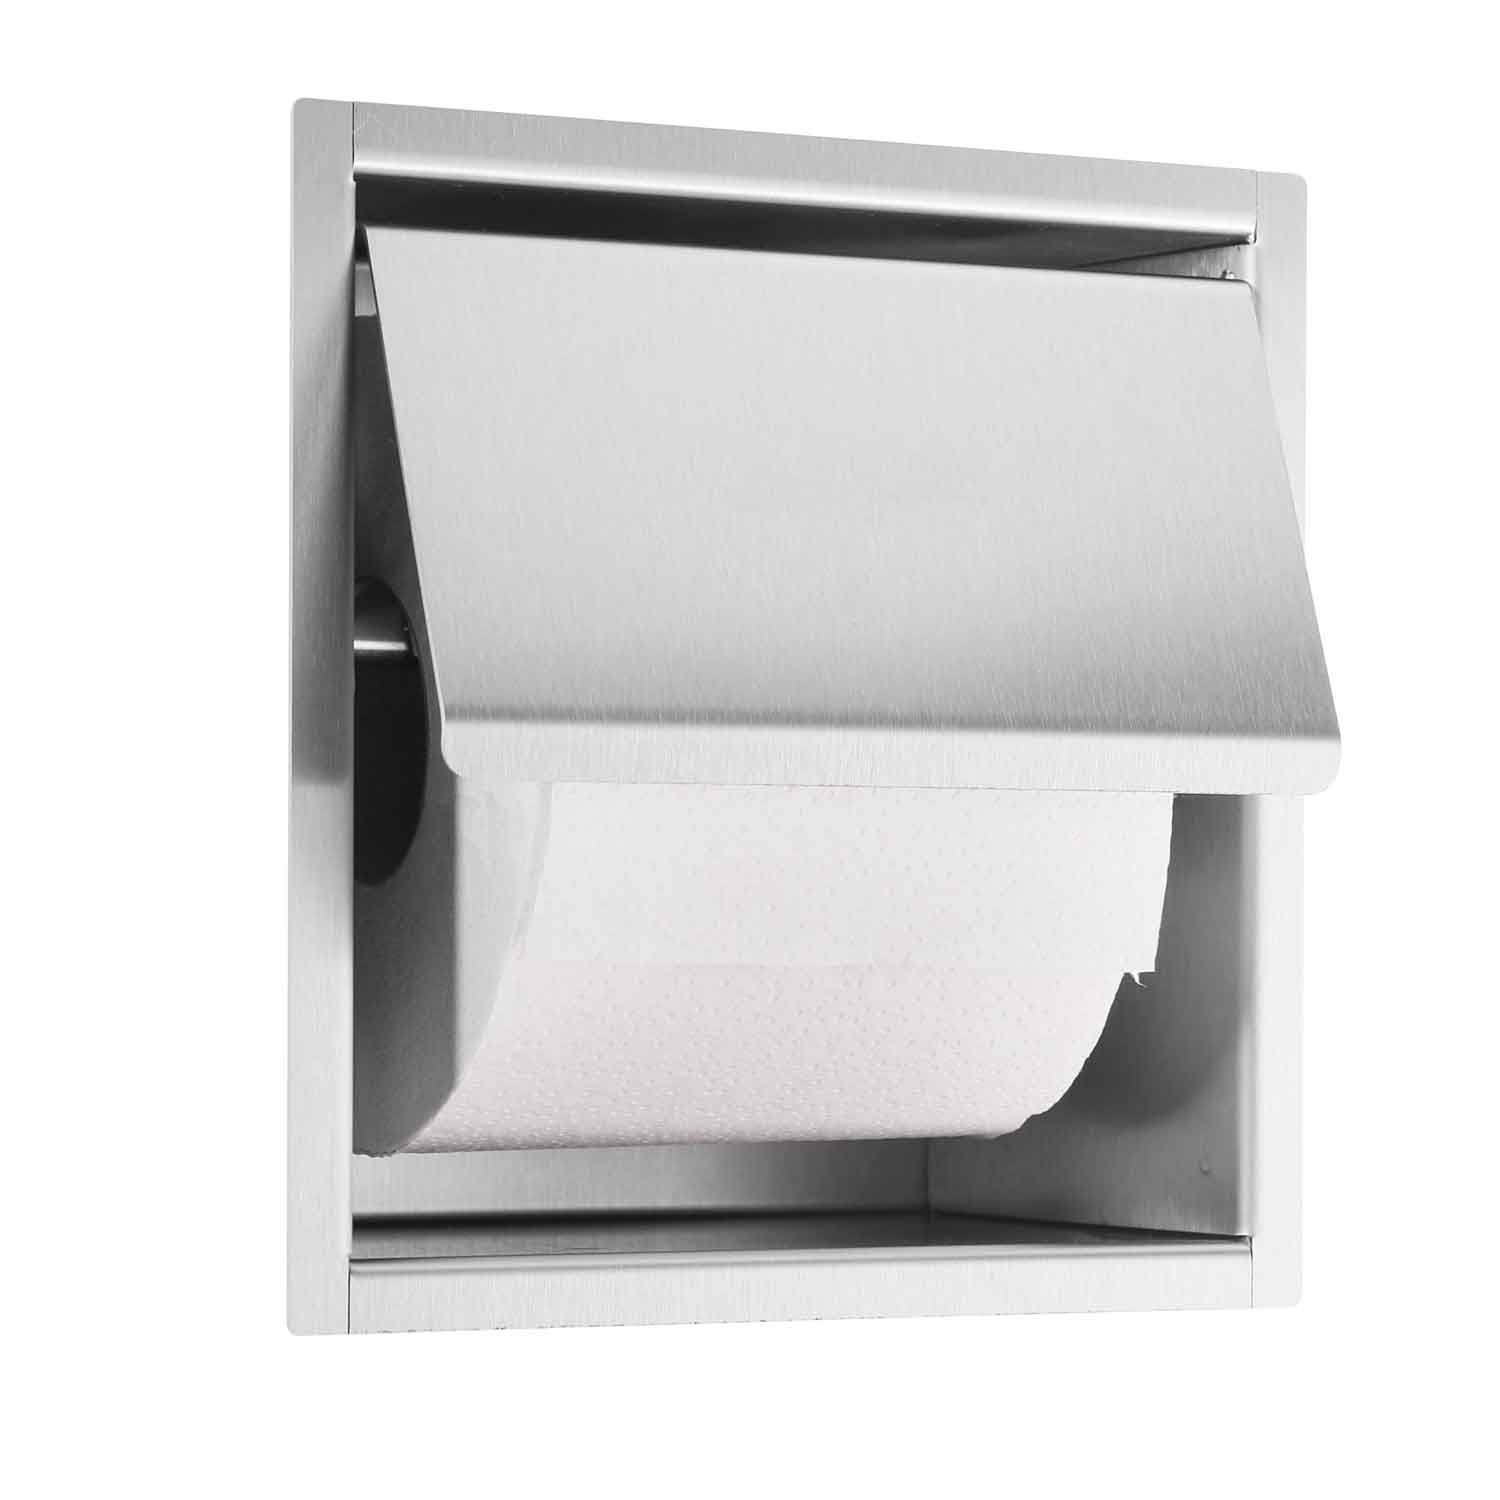 Pegasus Dorset Single Post Toilet Paper Holder in Chrome 474-546 